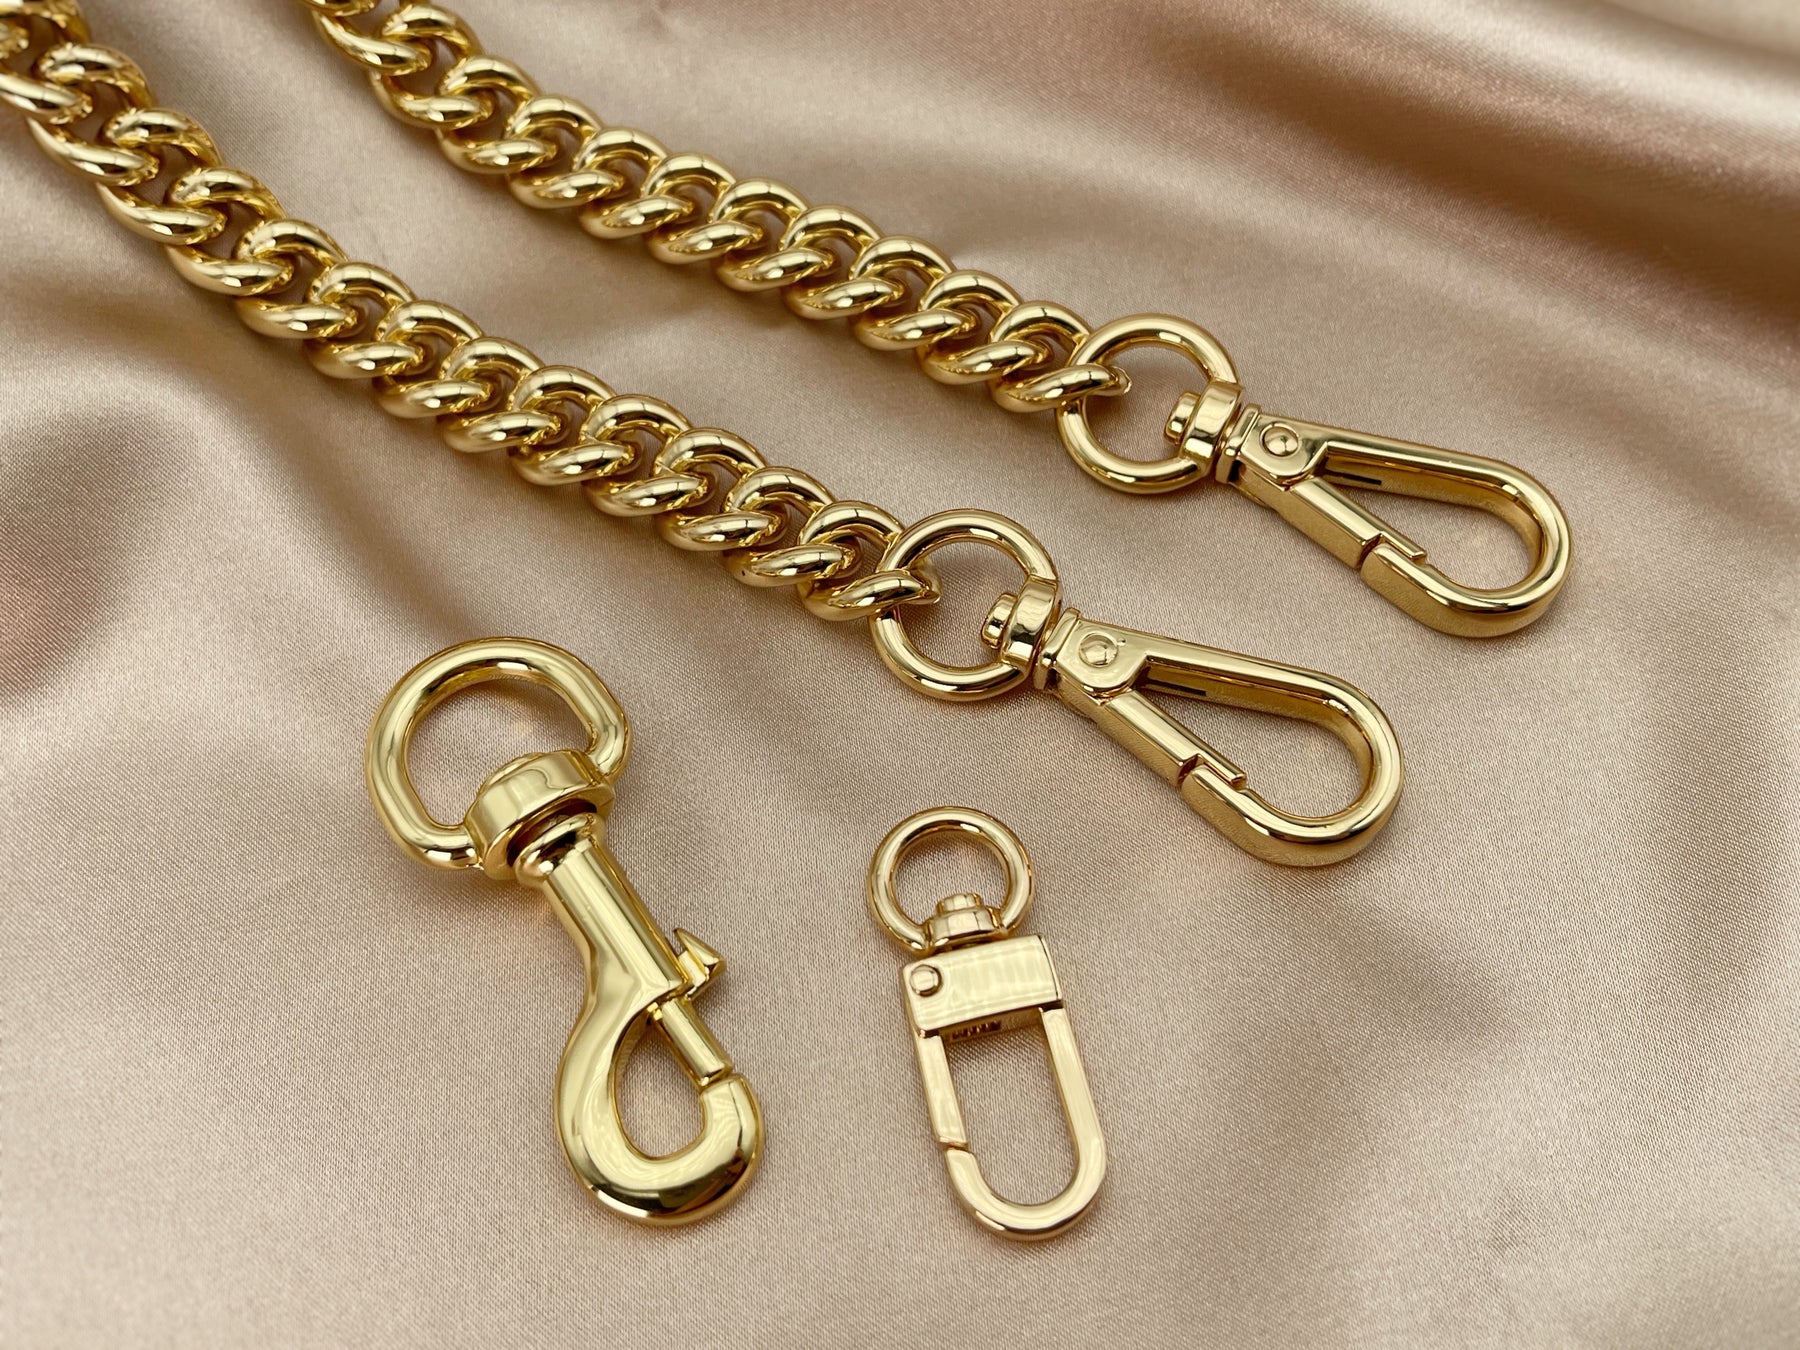 Vintage Gold Purse Chain  Antique Purse Chain Strap – L&S LEATHER